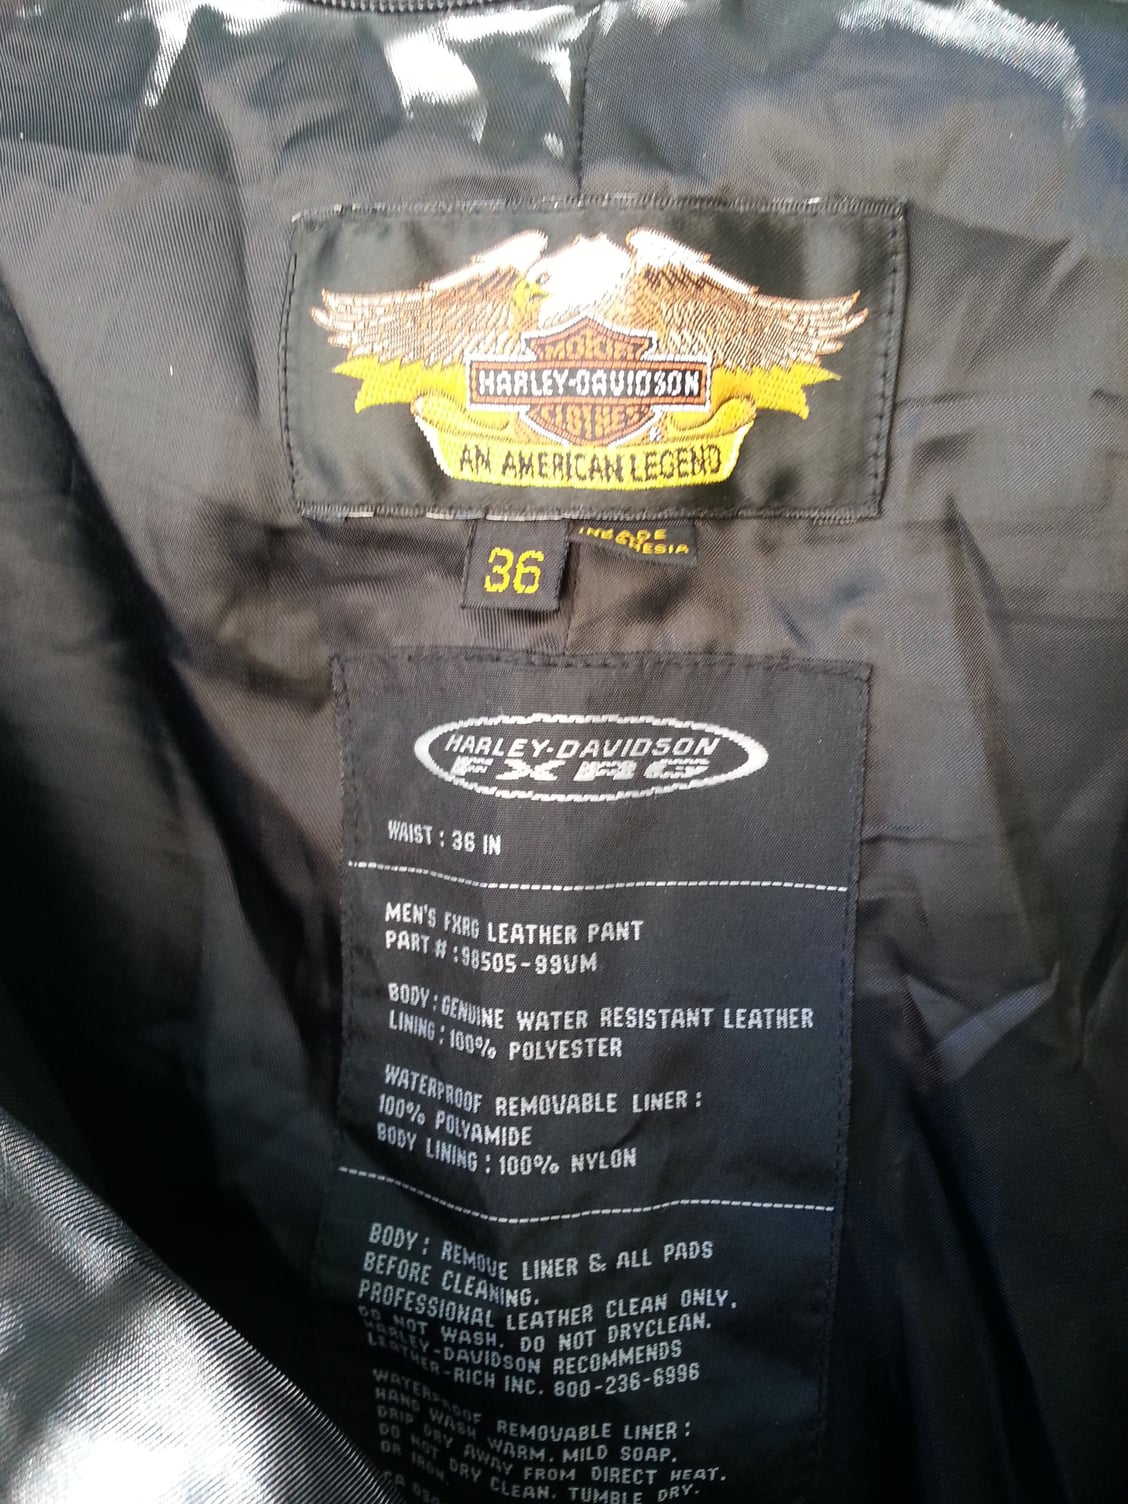 Harley Davidson FXRG Leather Pants w/Rain Liner! - Harley Davidson Forums